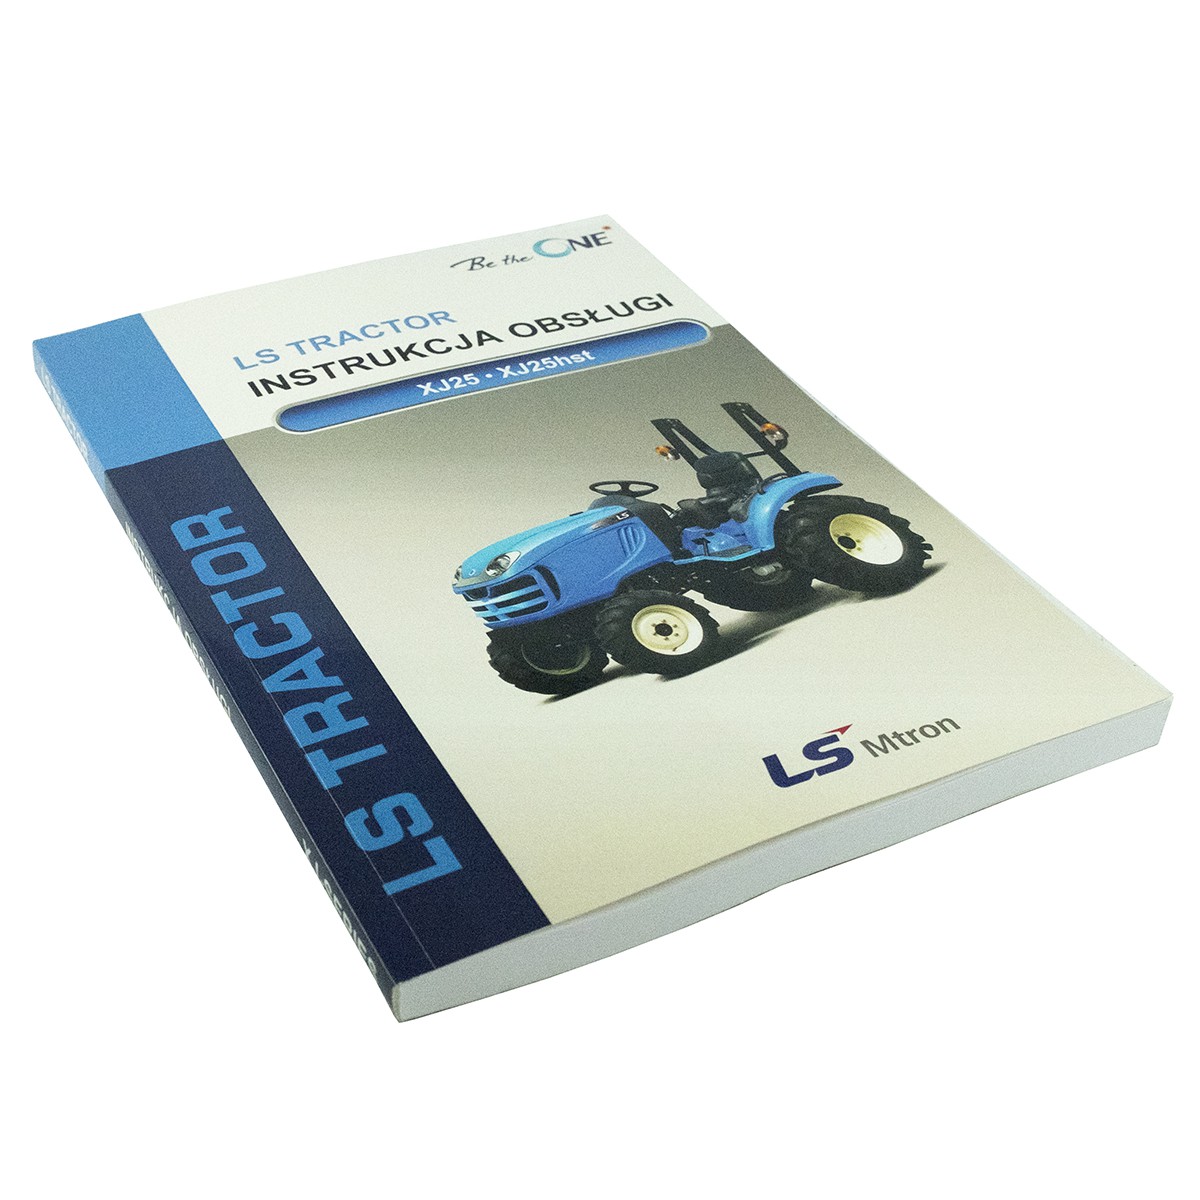 Instrukcja obsługi ciągnik LS Tractor XJ25 / LS Tractor XJ25 HST